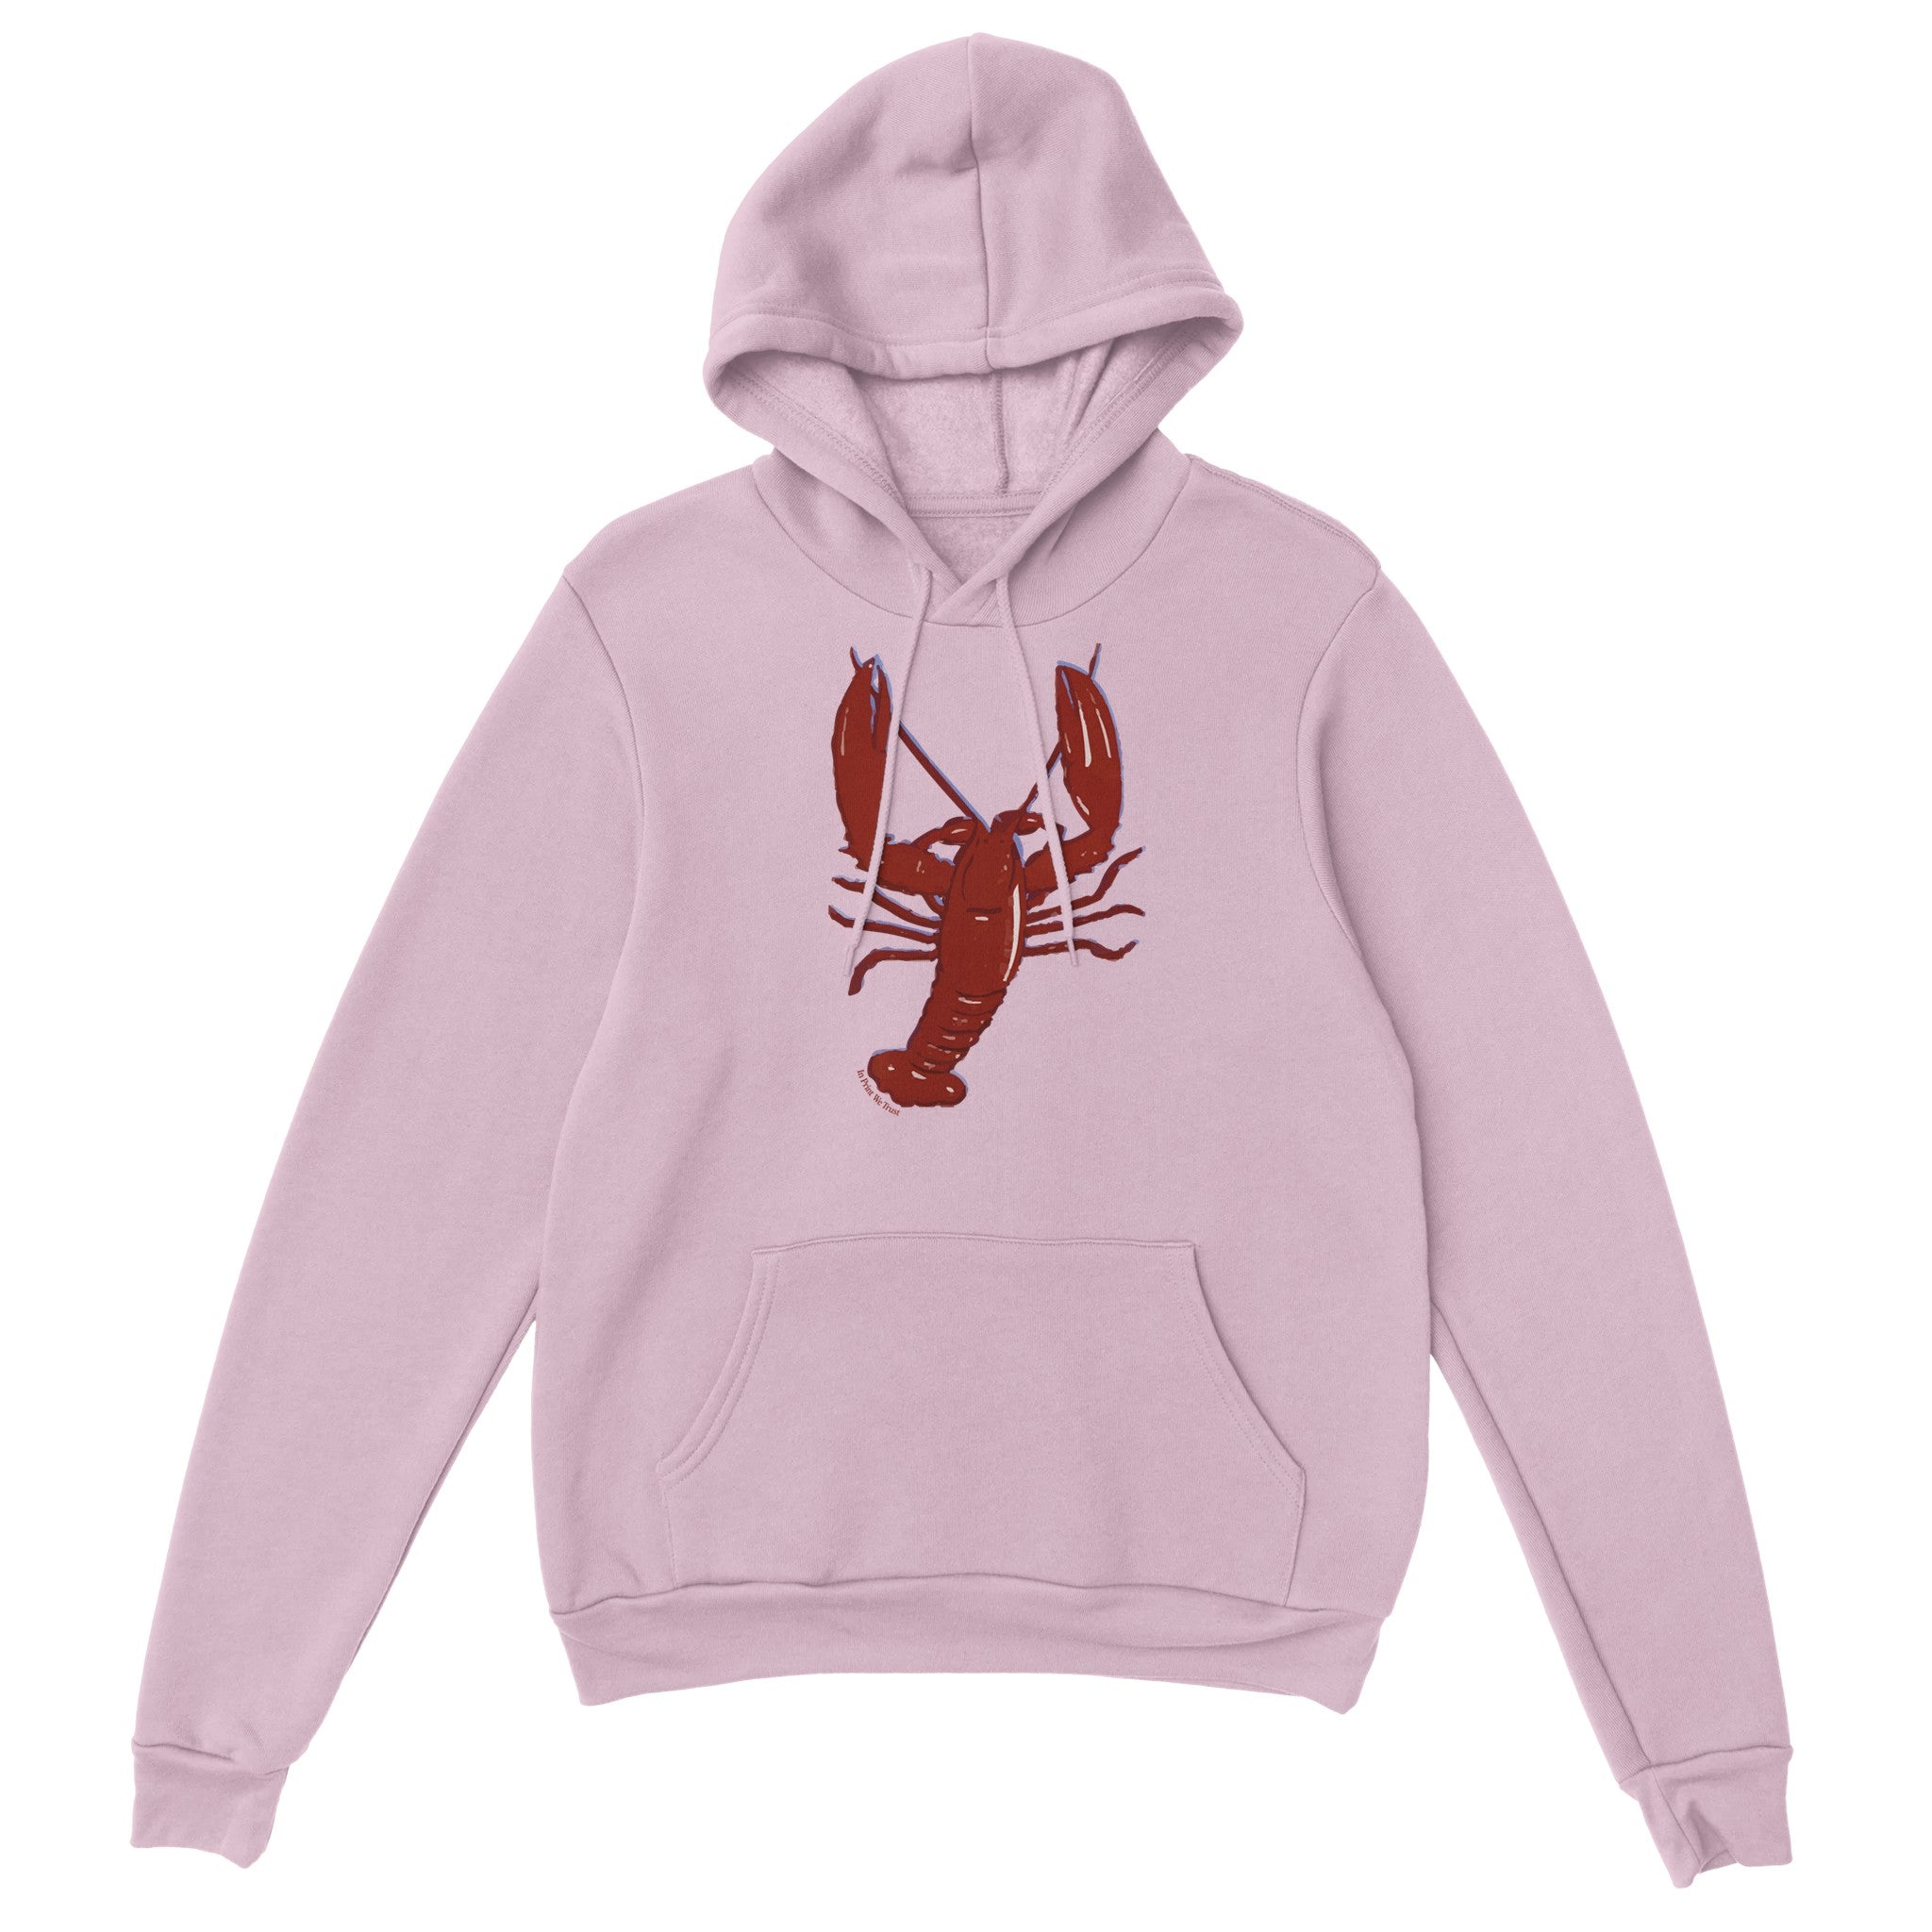 'You're My Lobster' hoodie - In Print We Trust